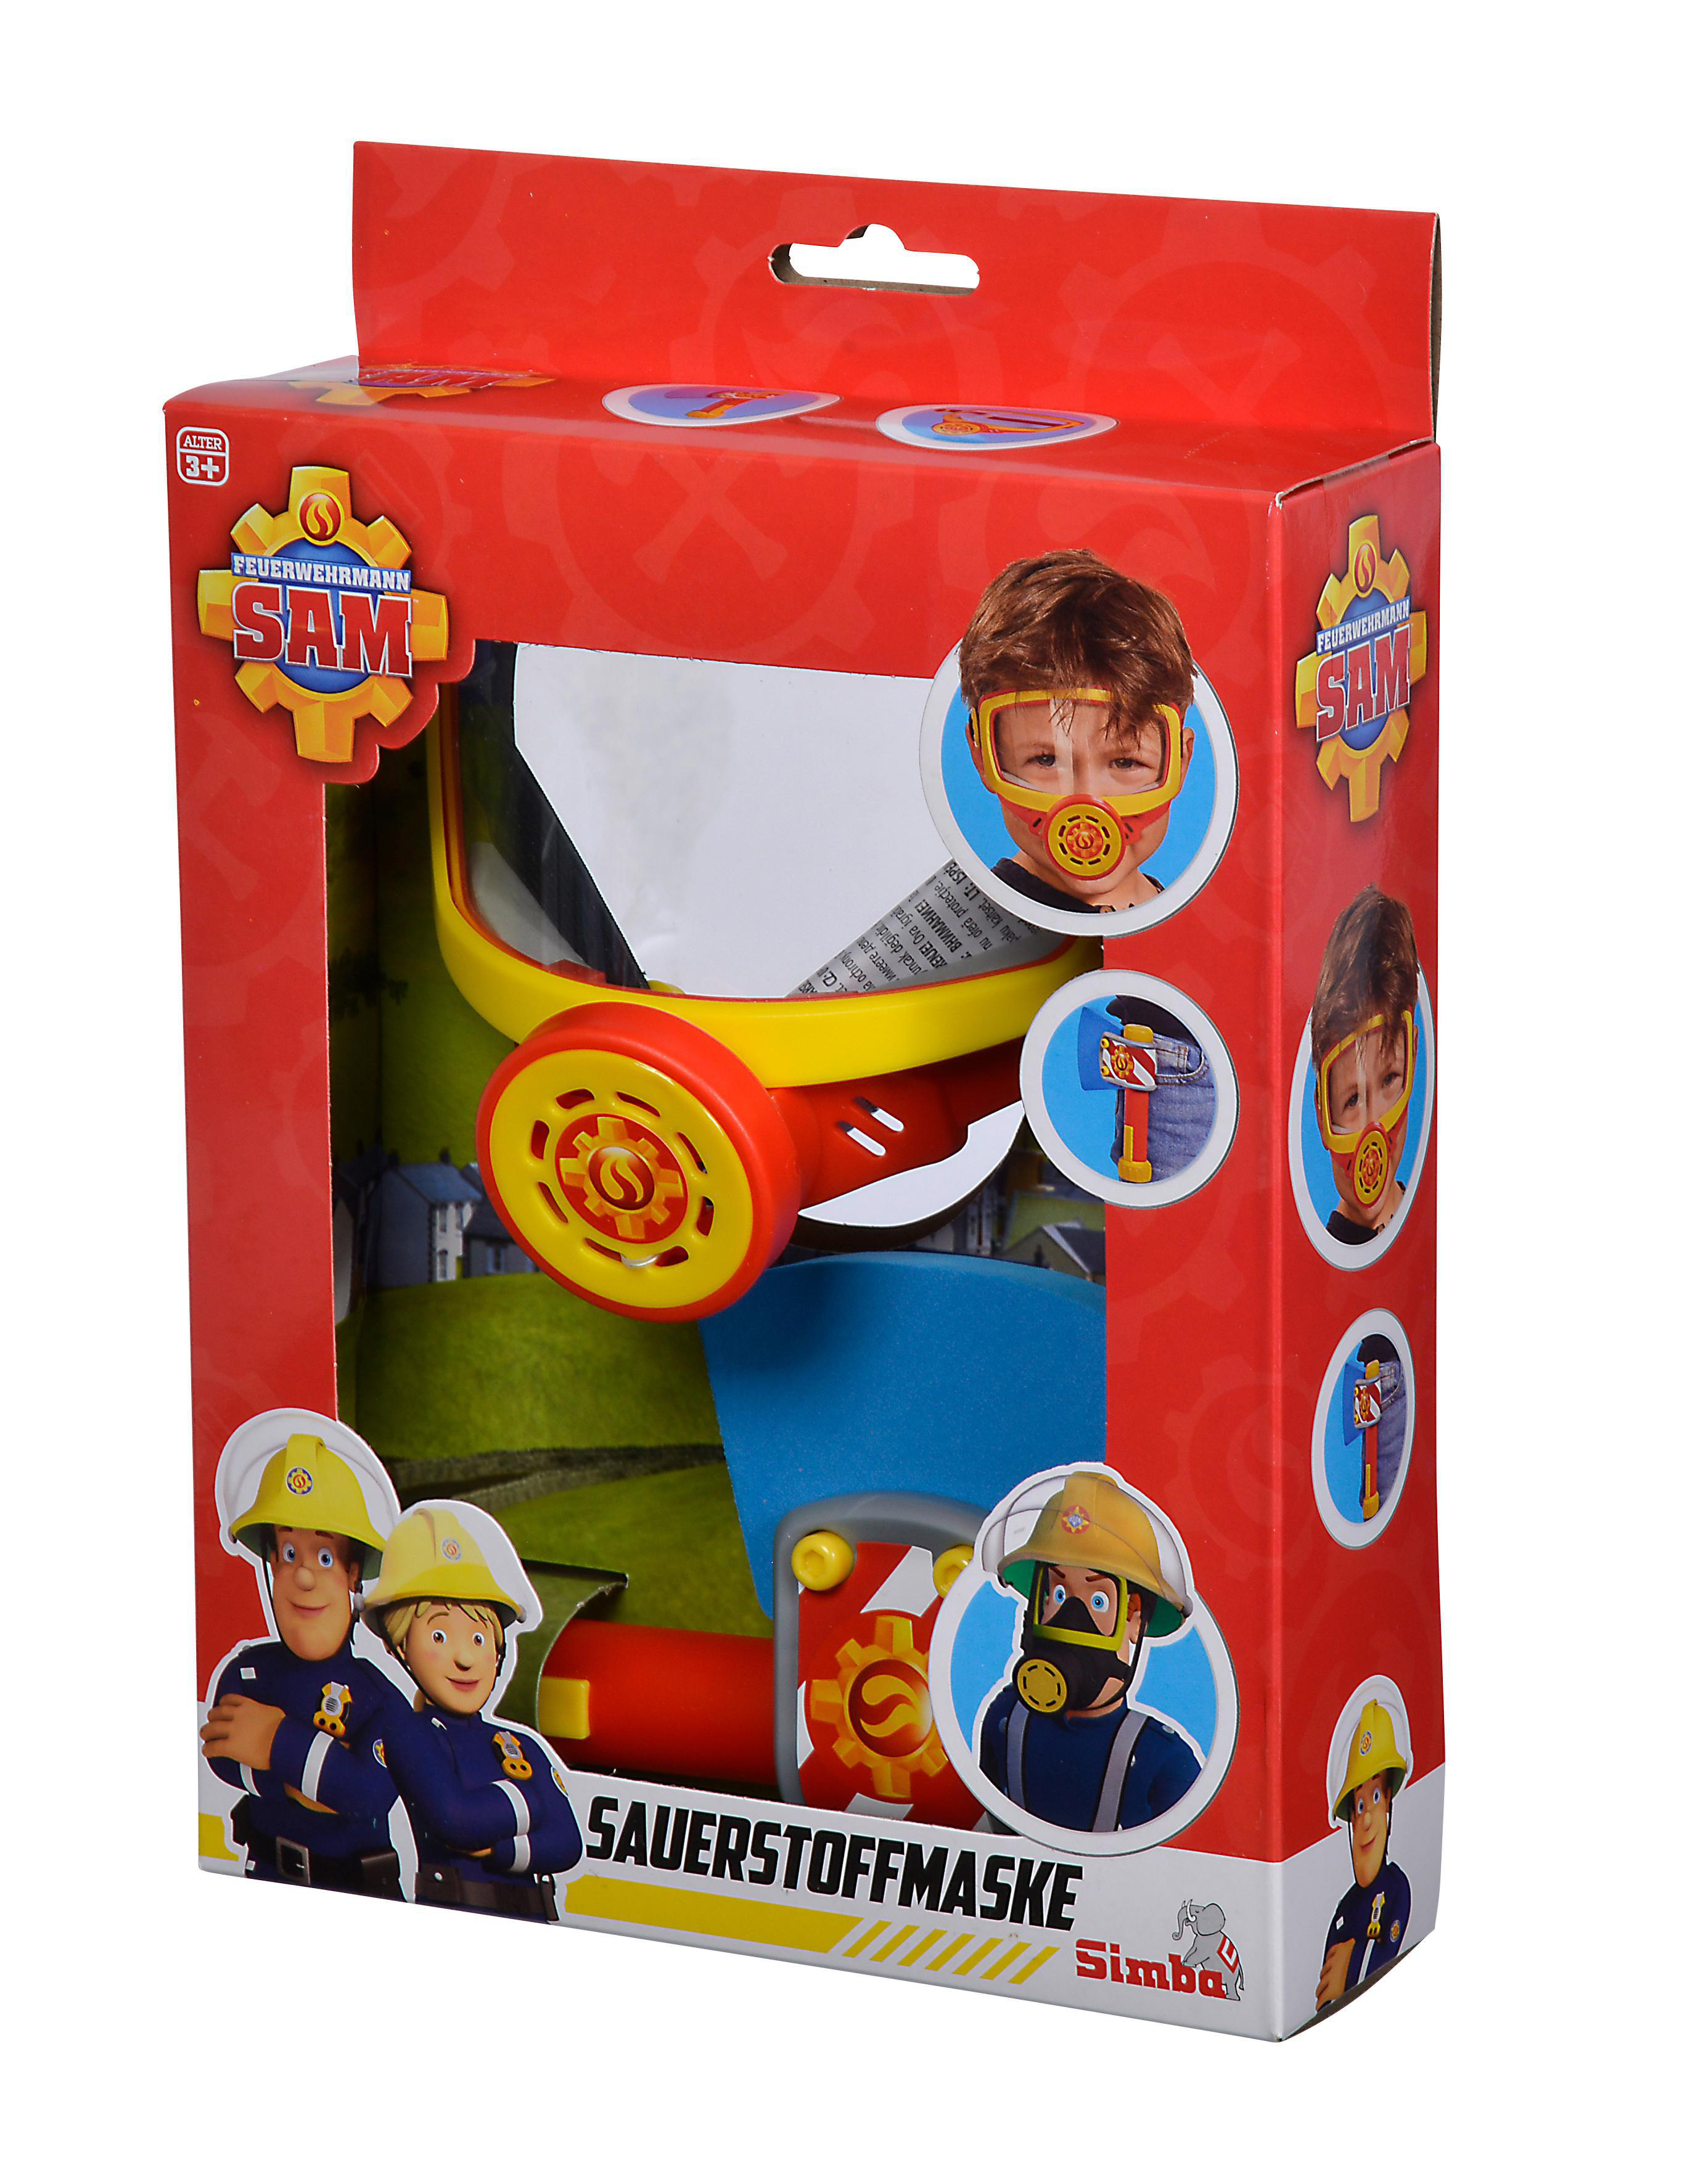 Rollenspielzeug, Feuerwehrmann TOYS Sauerstoffmaske Sam Mehrfarbig SIMBA